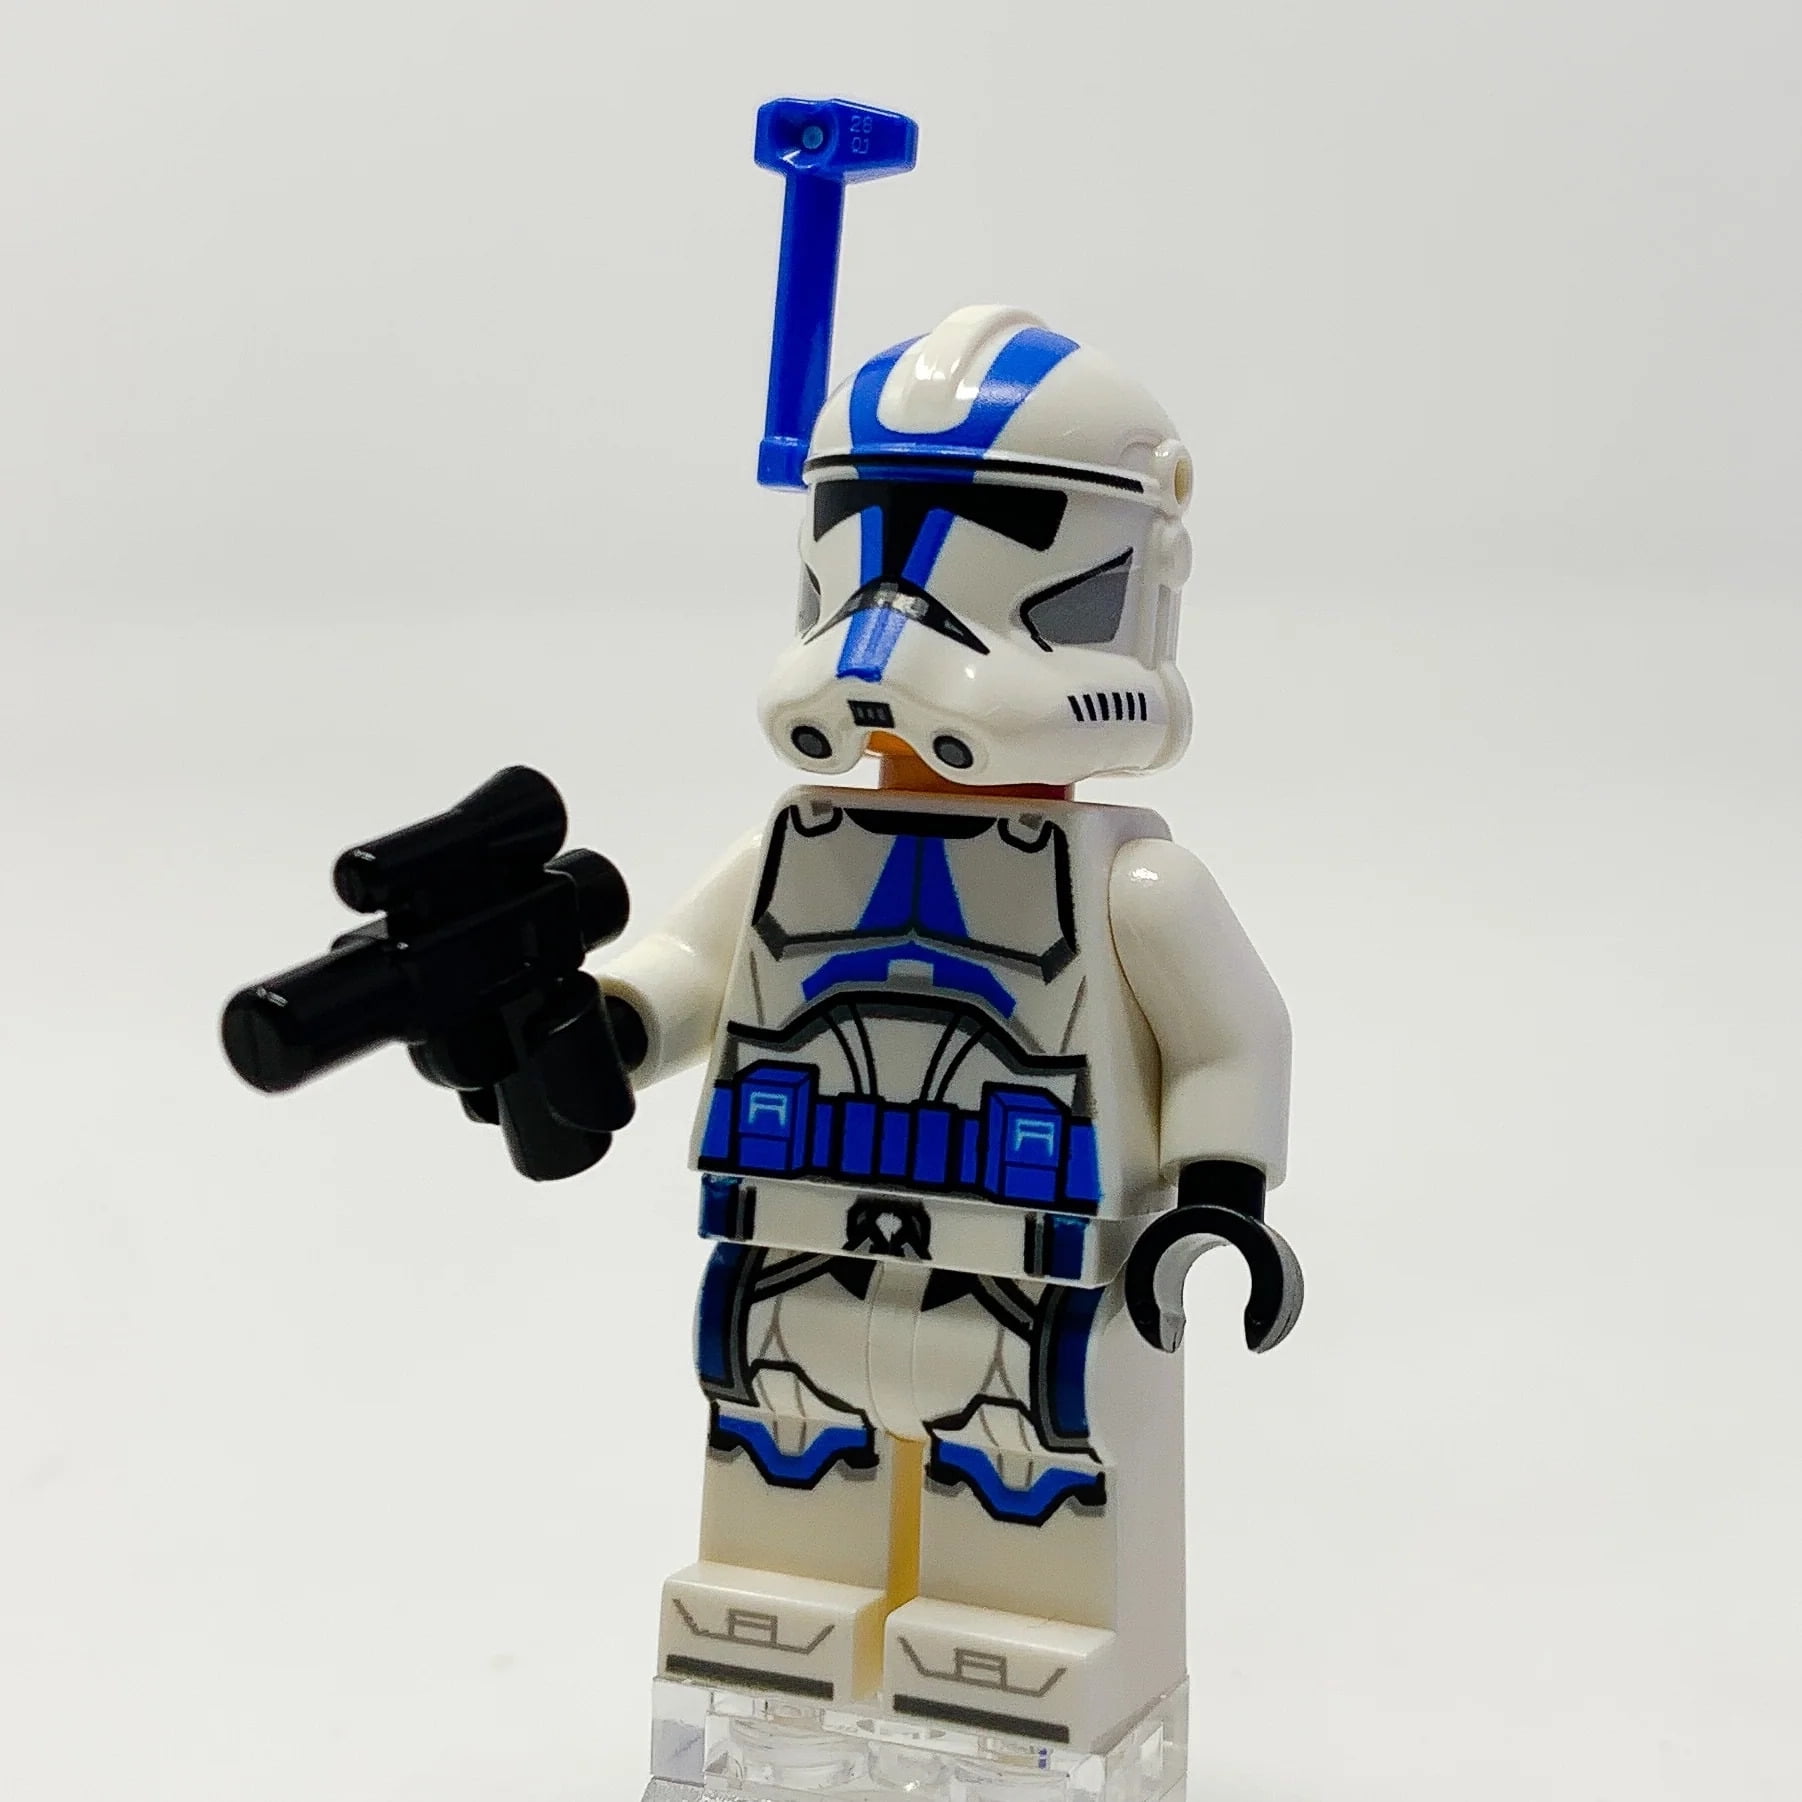 Haute qualité 8 pièces / set Lego Star Wars Figurines Star Wars Brick  Action Figures